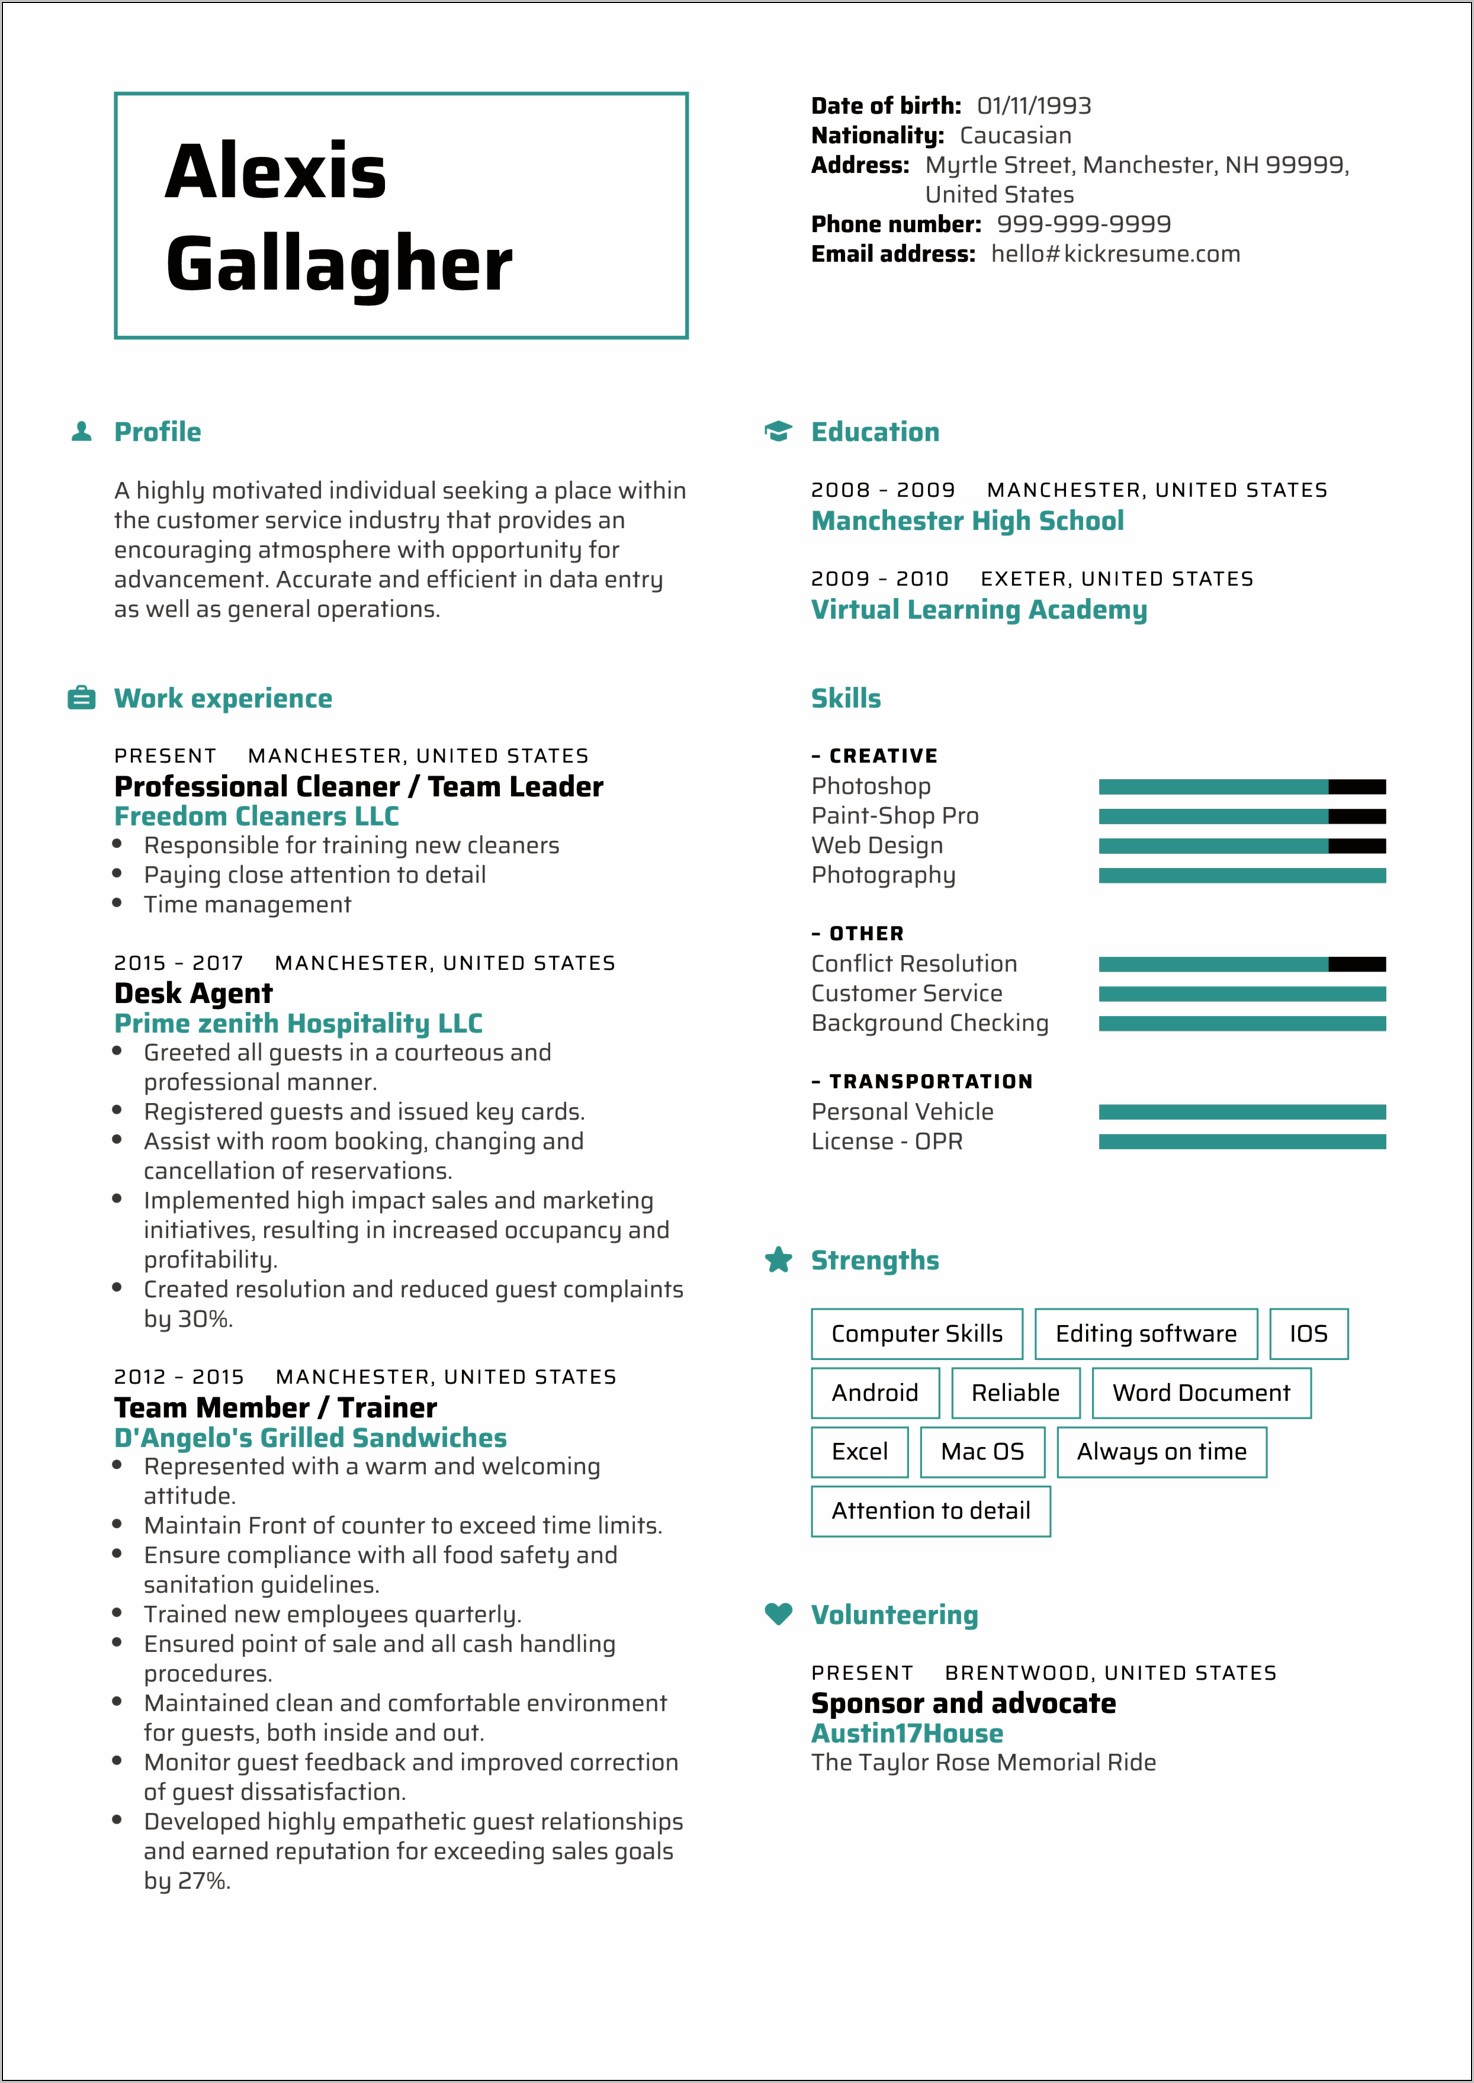 graduate nurse resume template free